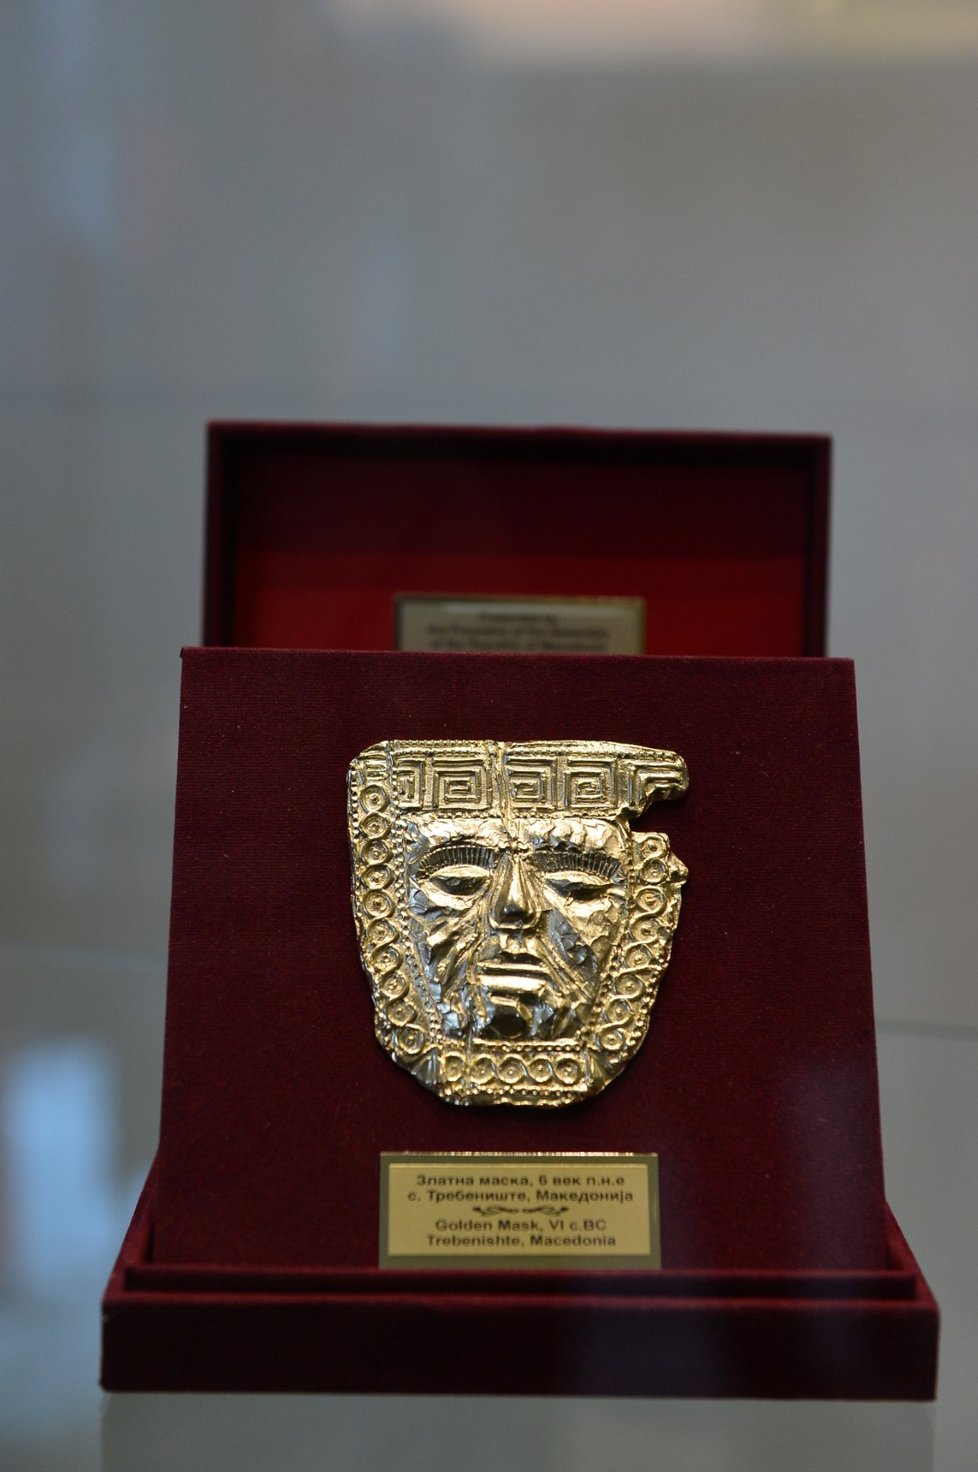 Upomínkový předmět s kopií zlaté pohřební masky z Trebenište u Ohridu (z doby železné ze 7. století).  Dar předsedy Shromáždění Republiky Severní Makedonie.